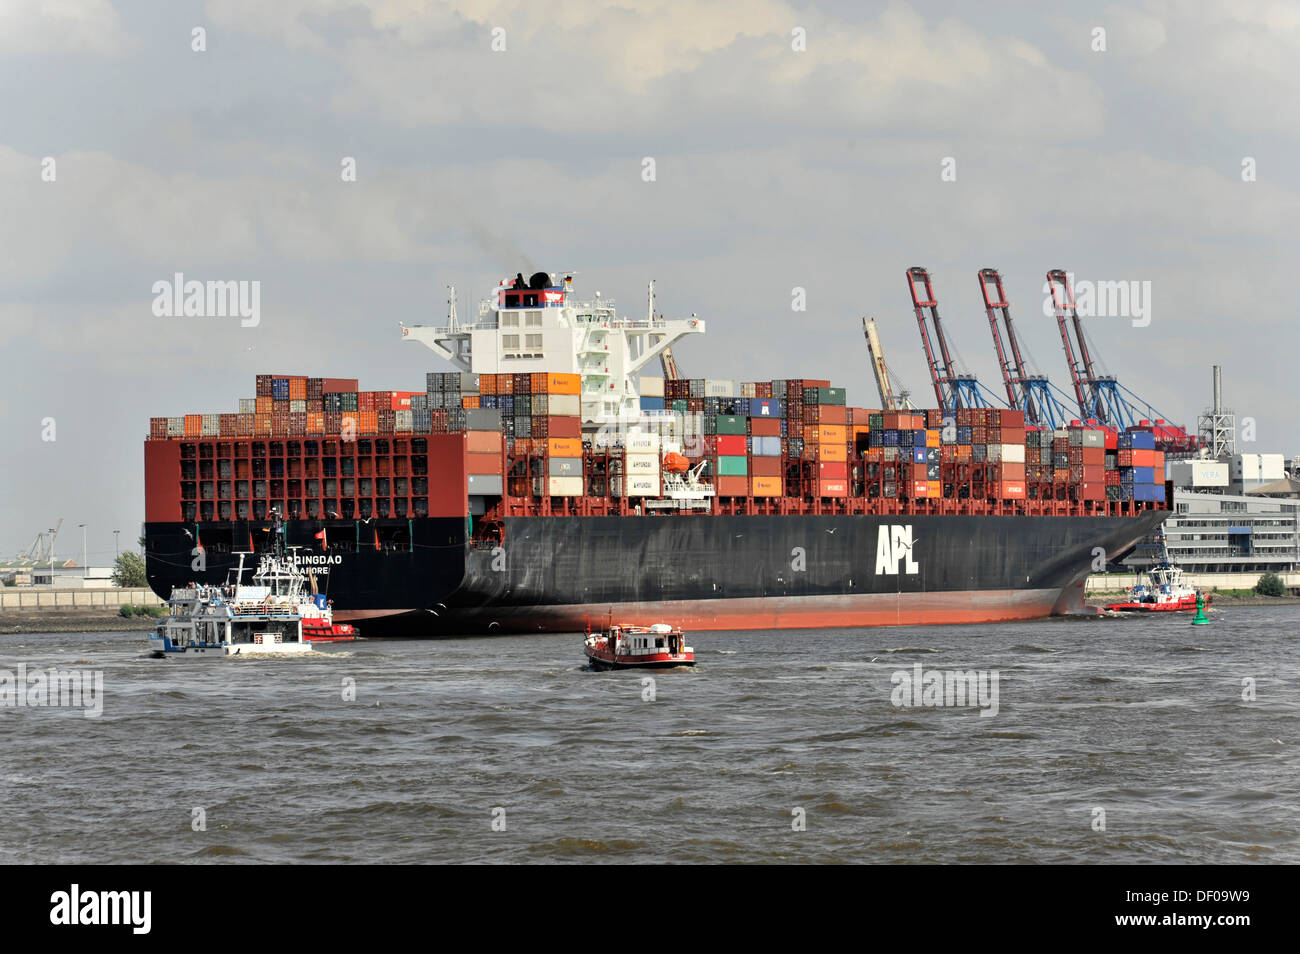 APL QINGDAO nave portacontainer, 349 m lungo, costruito nel 2012, arrivando, porto di Amburgo, Amburgo Foto Stock